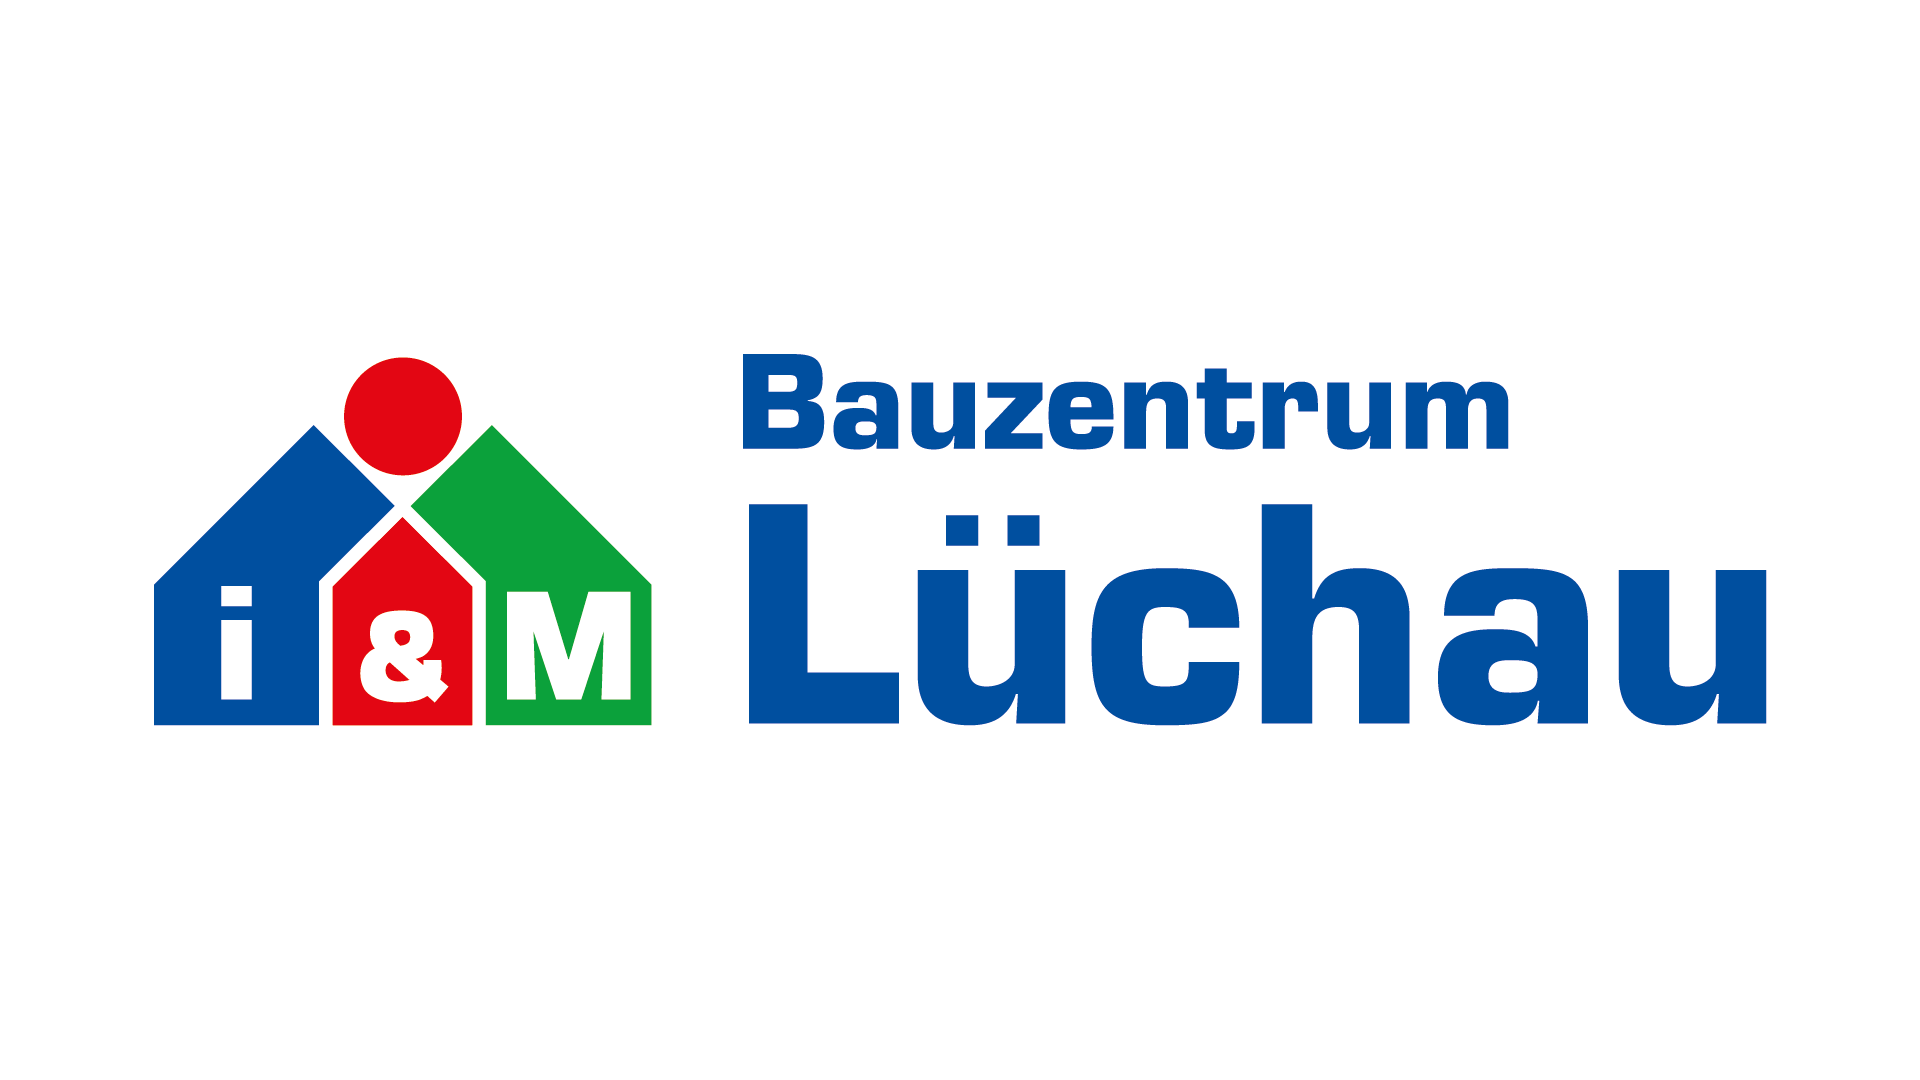 Lüchau Baustoffe GmbH